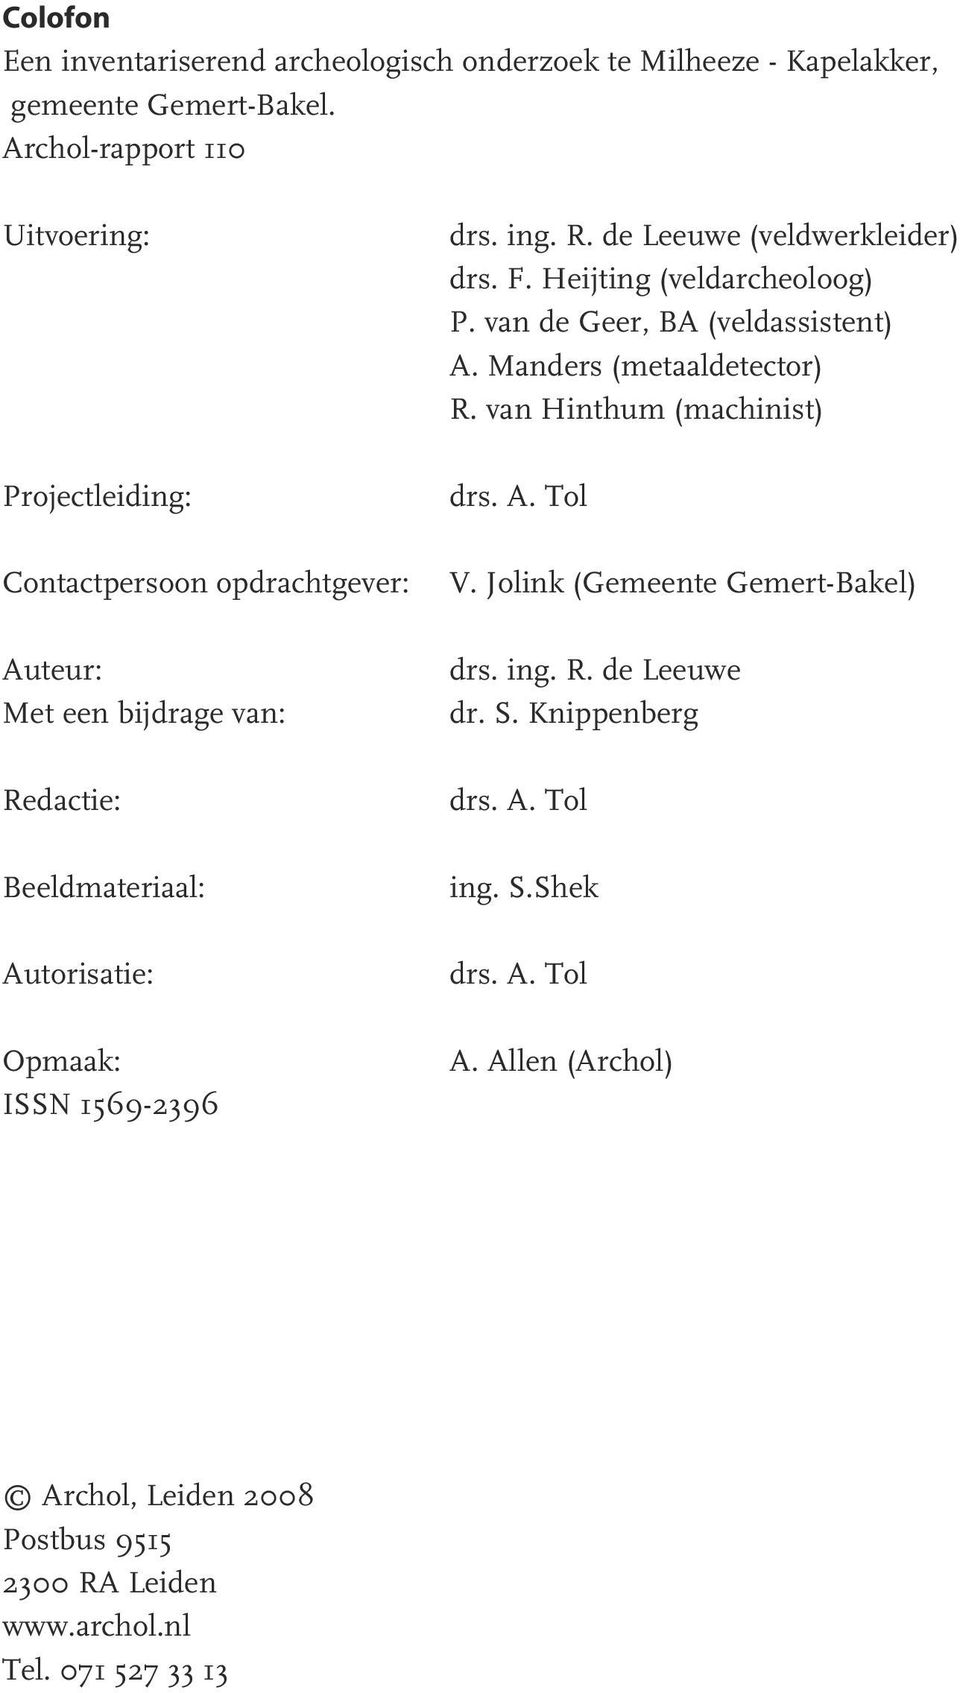 1569-2396 drs. ing. R. de Leeuwe (veldwerkleider) drs. F. Heijting (veldarcheoloog) P. van de Geer, BA (veldassistent) A. Manders (metaaldetector) R.